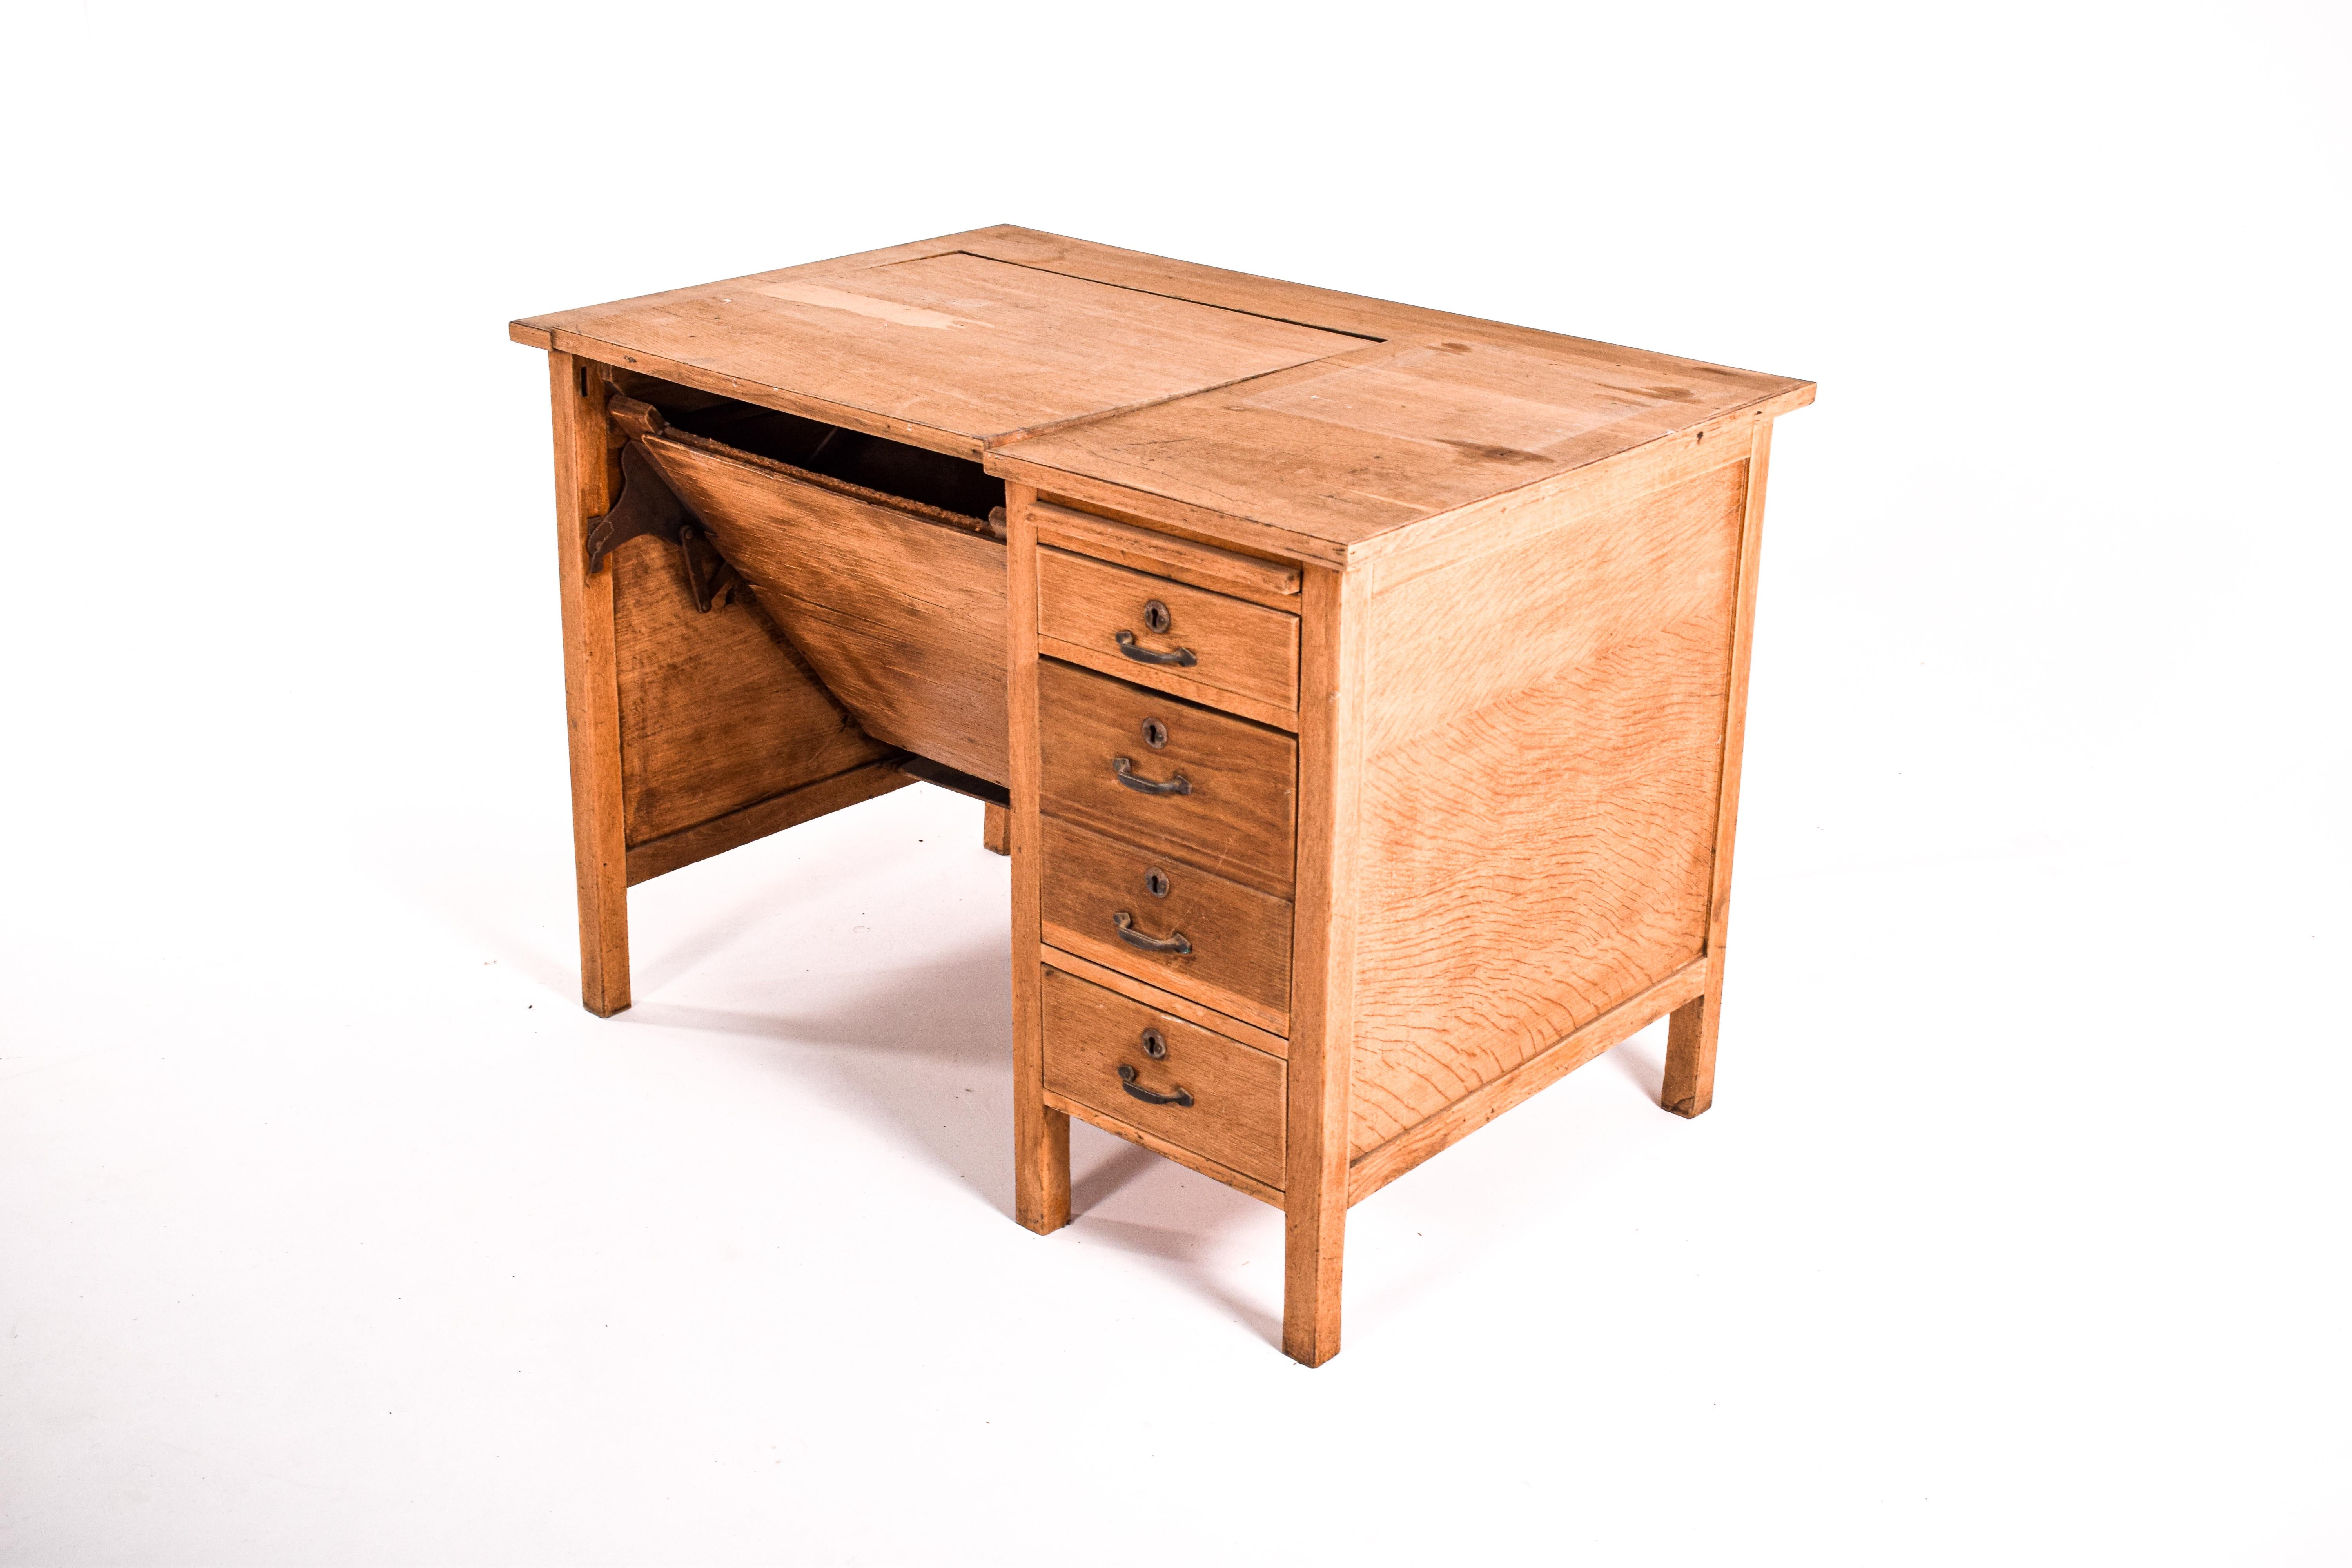 Rare bureau de la fabrique portugaise Olaio. Fabriqué en 1950 avec du bois de chêne. Ce bureau a 3 tiroirs, l'un d'entre eux est un dossier. Une planche à dessin. Dessus amovible avec espace pour ranger la machine à écrire. Modèle unique. Un modèle